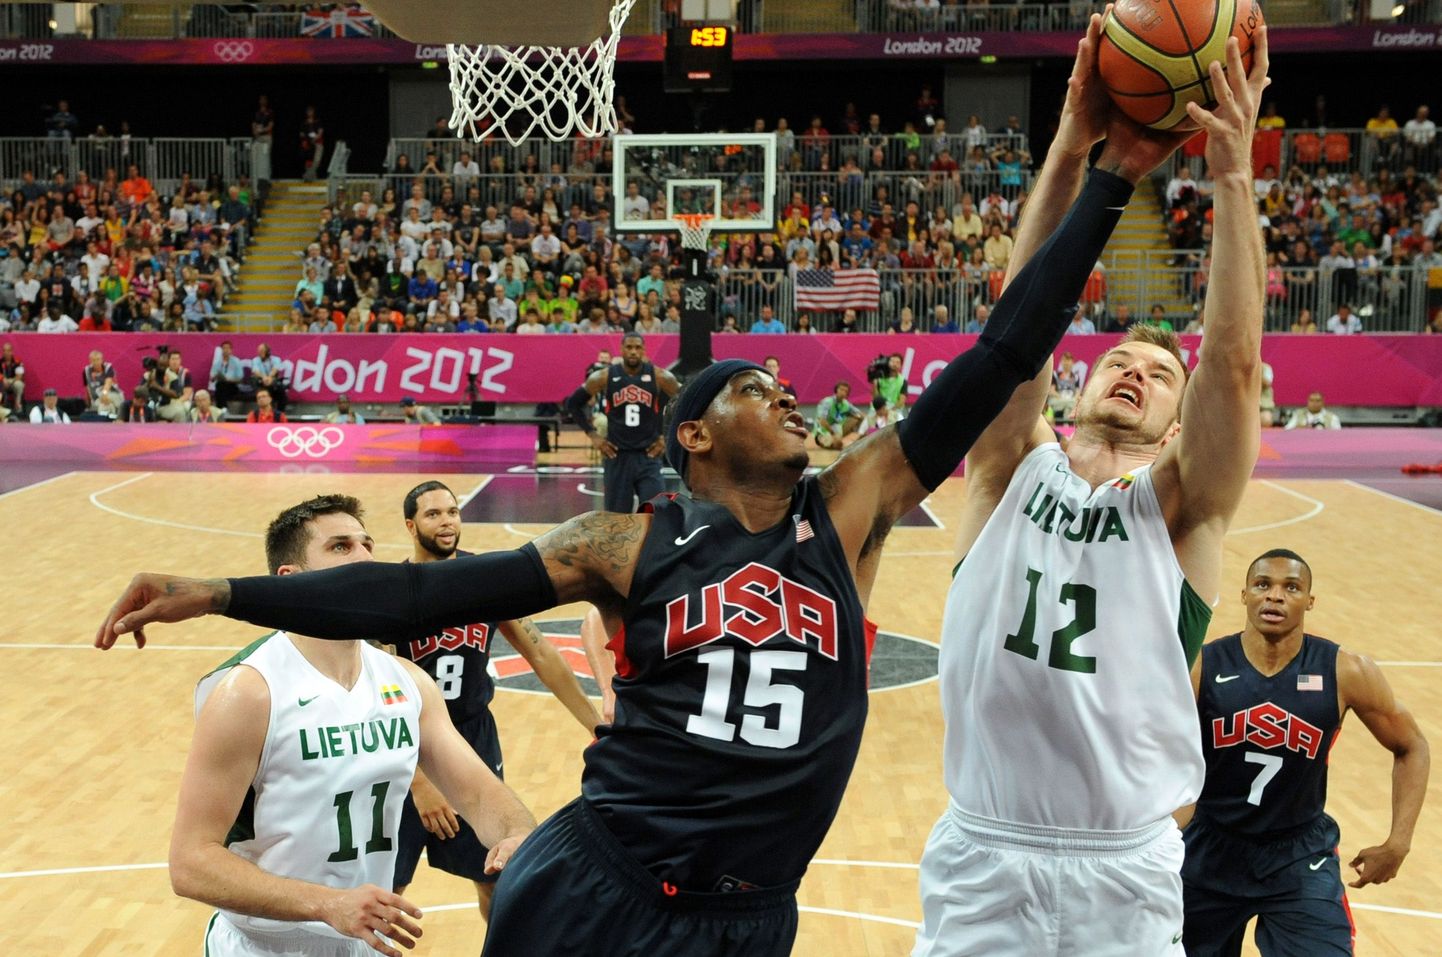 Момент баскетбольного матча Литва - США.